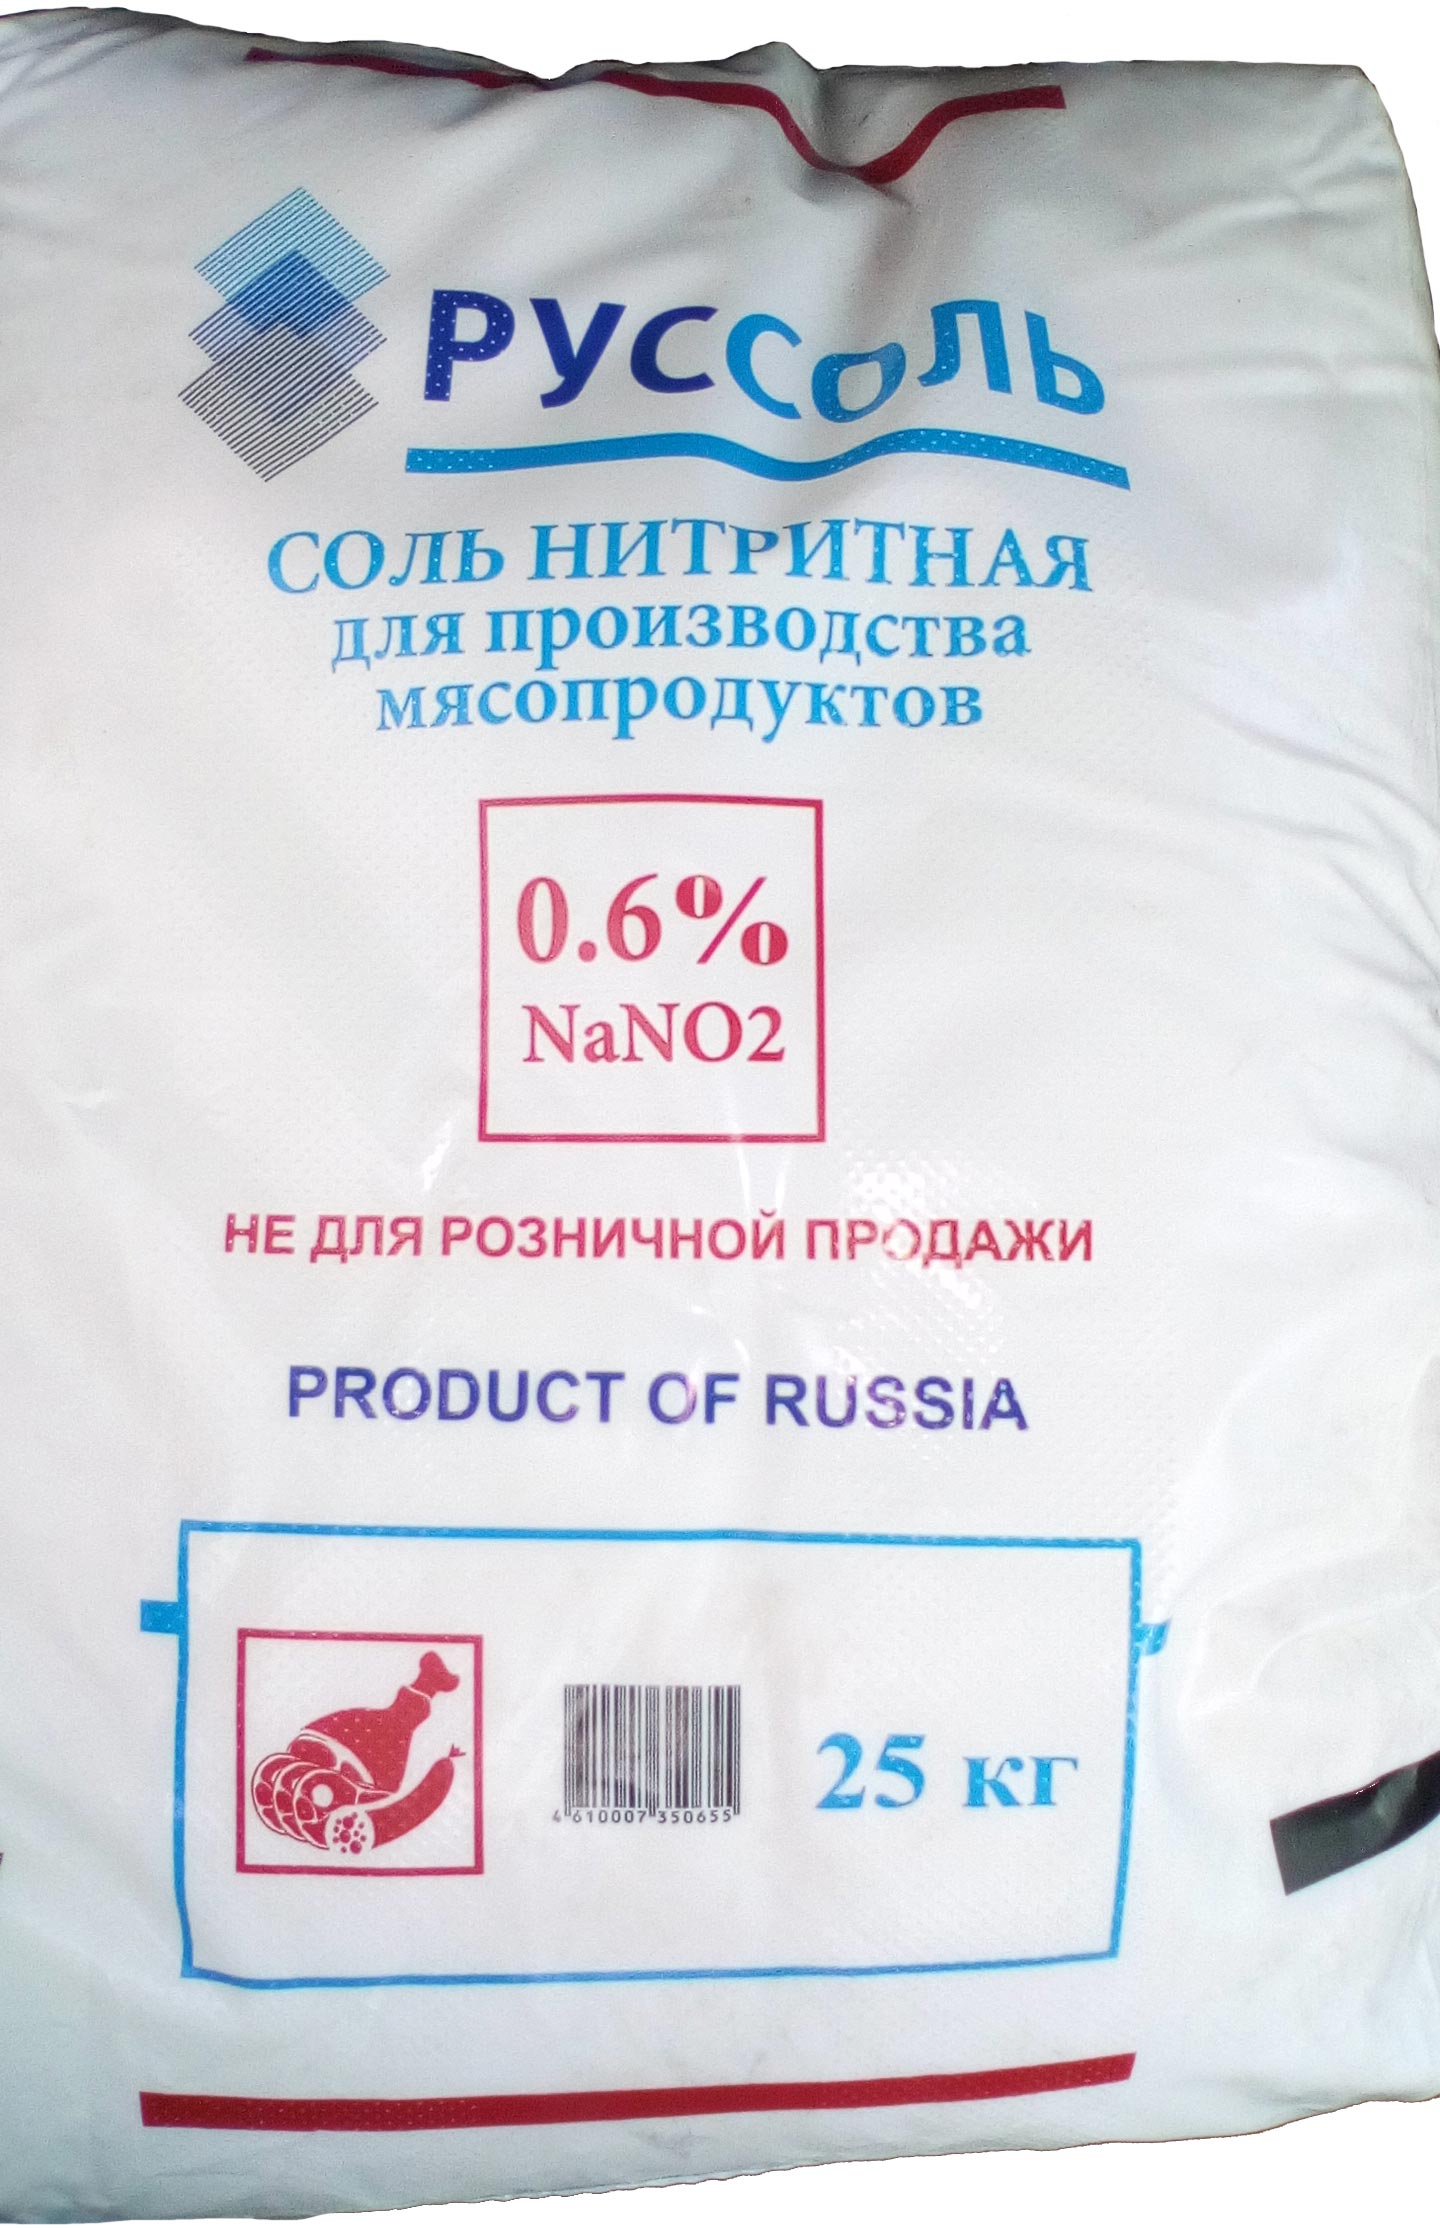 Купить нитритной соли тюмень тор браузер перевод на русский hydra